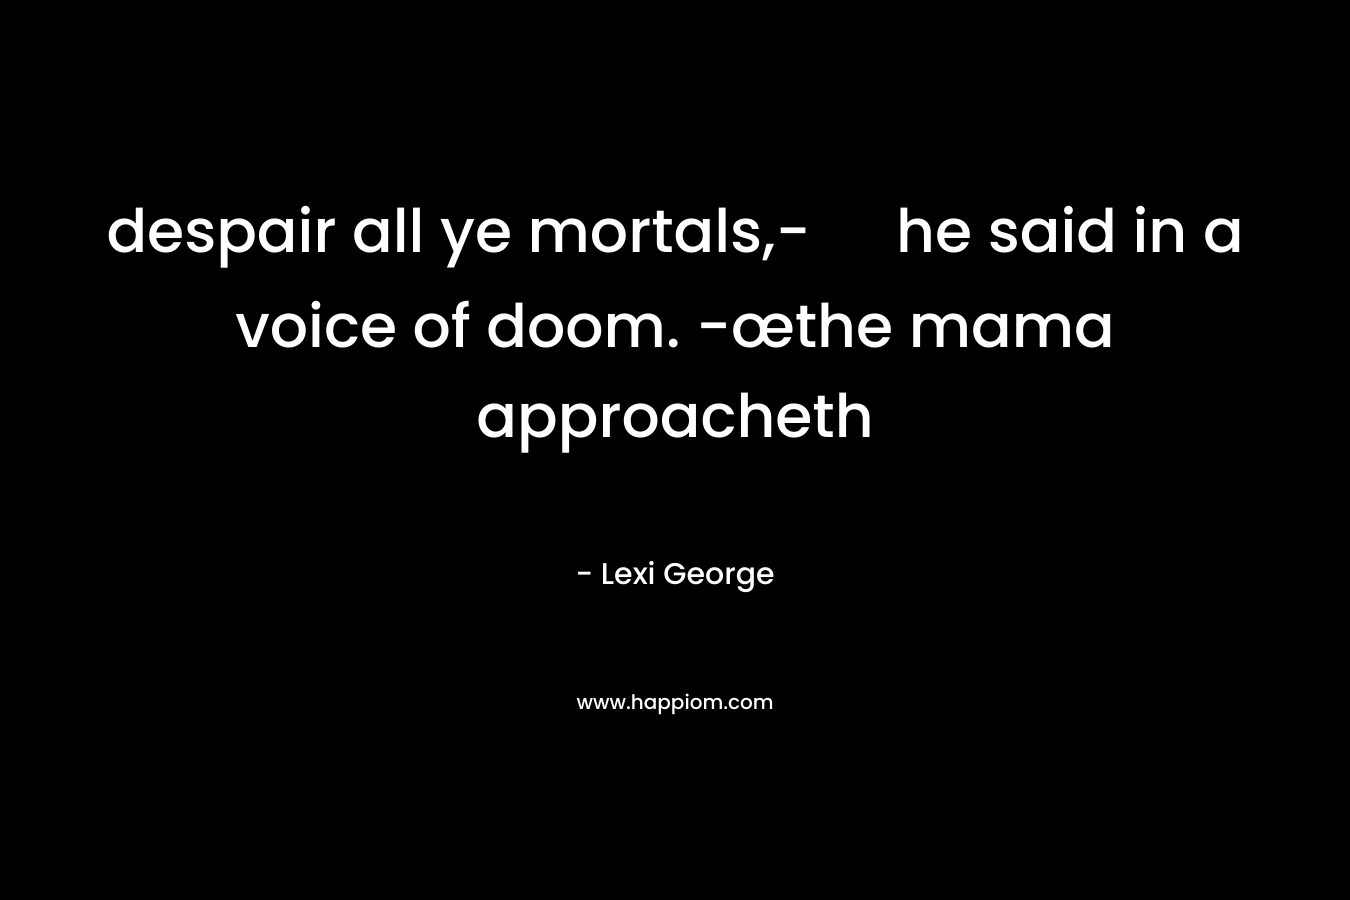 despair all ye mortals,- he said in a voice of doom. -œthe mama approacheth